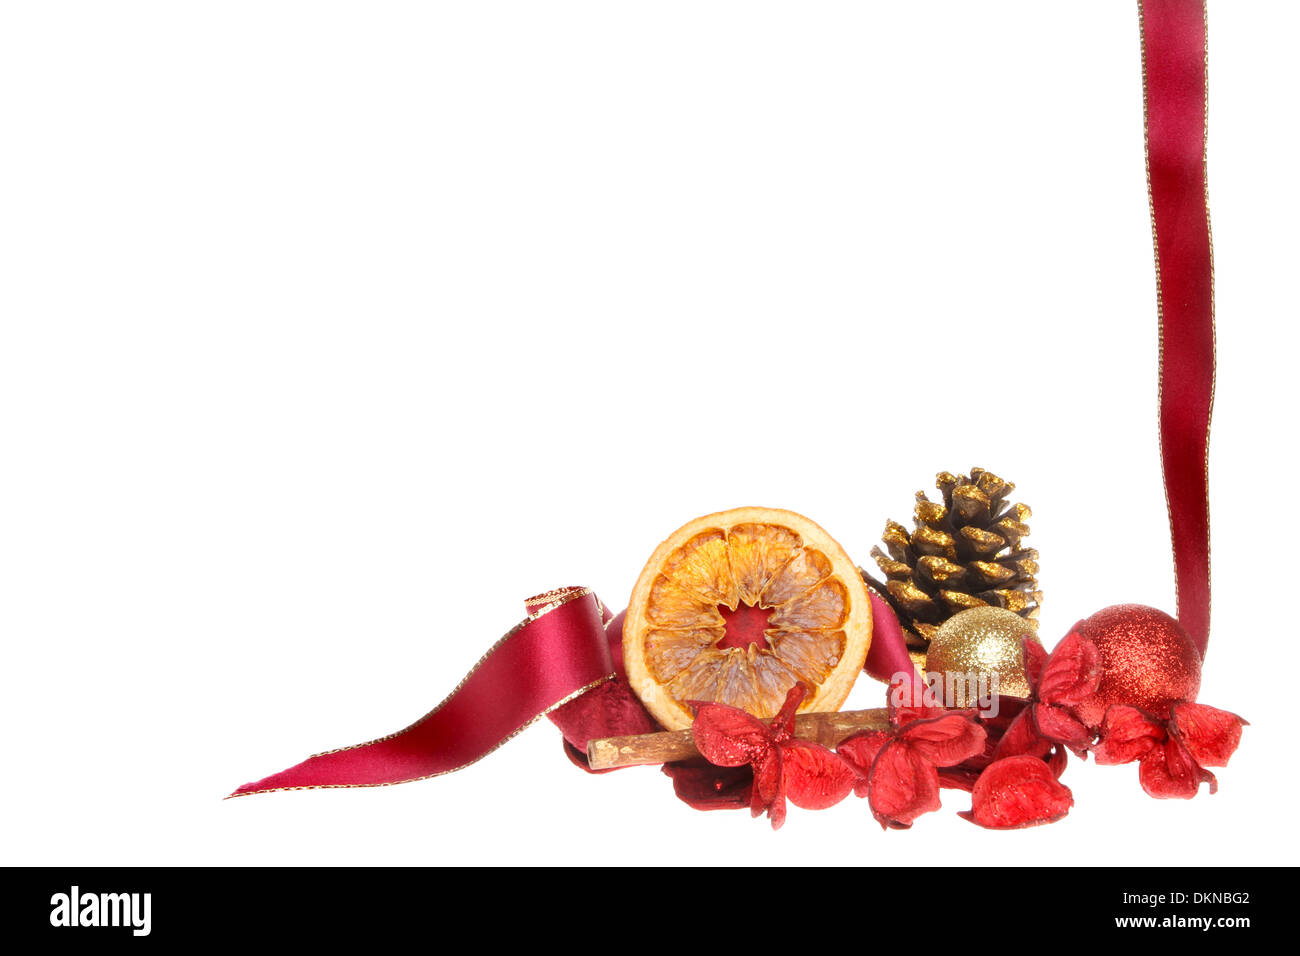 Sur le thème de Noël frontière de ruban rouge, potpourri, pomme et babioles isolés contre white Banque D'Images